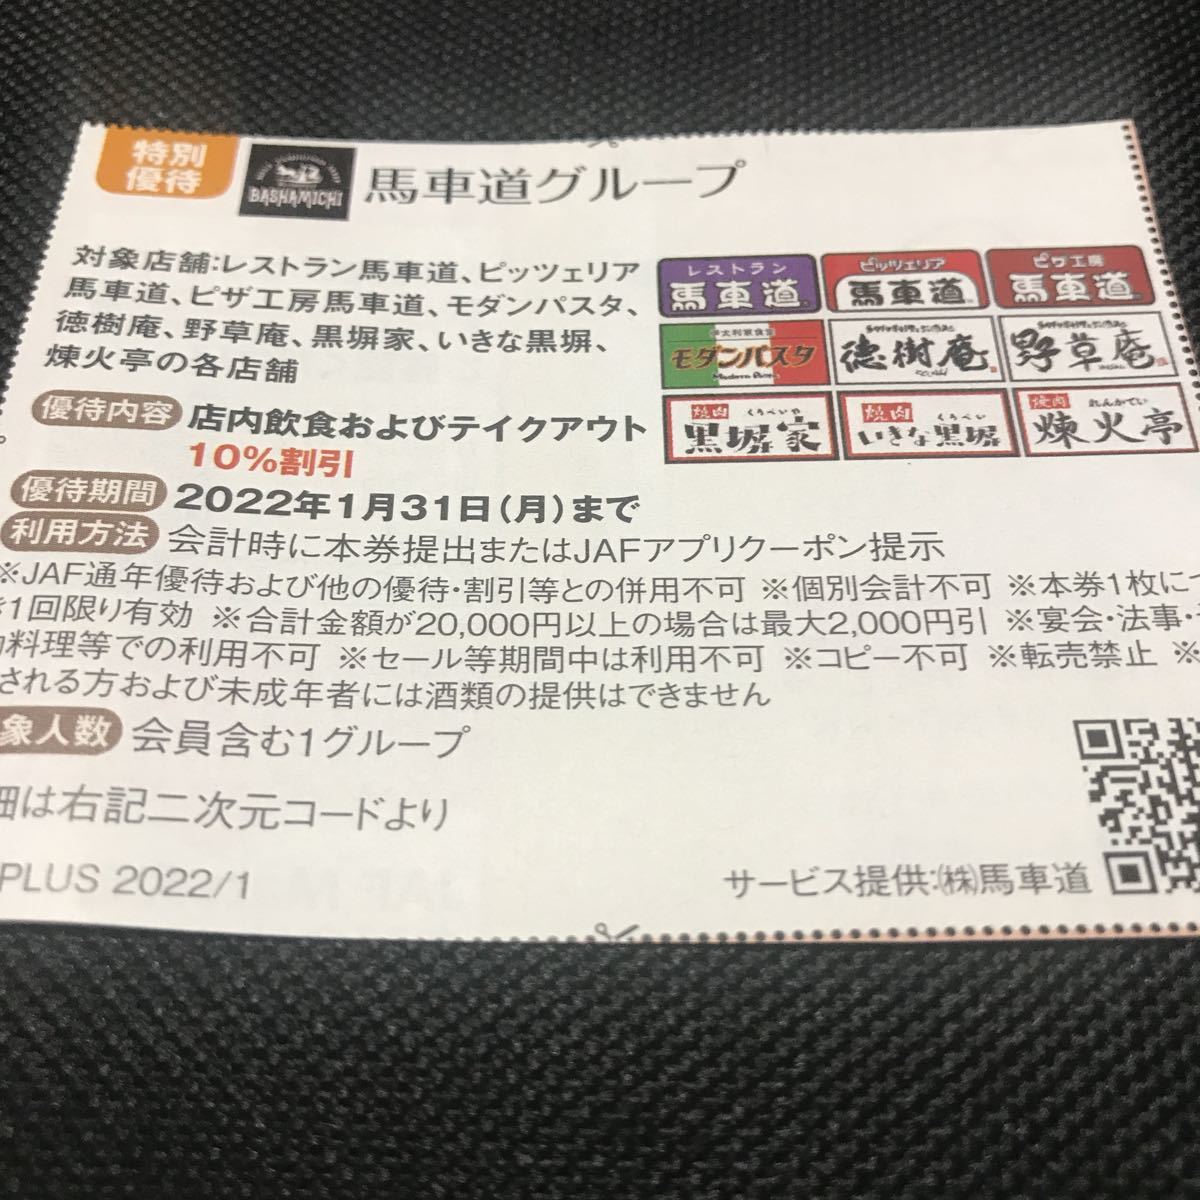 JAF 1月31日 送料63円 クーポン 割引券 ポイント消化 優待券 ジャフ 馬車道グループ_画像1